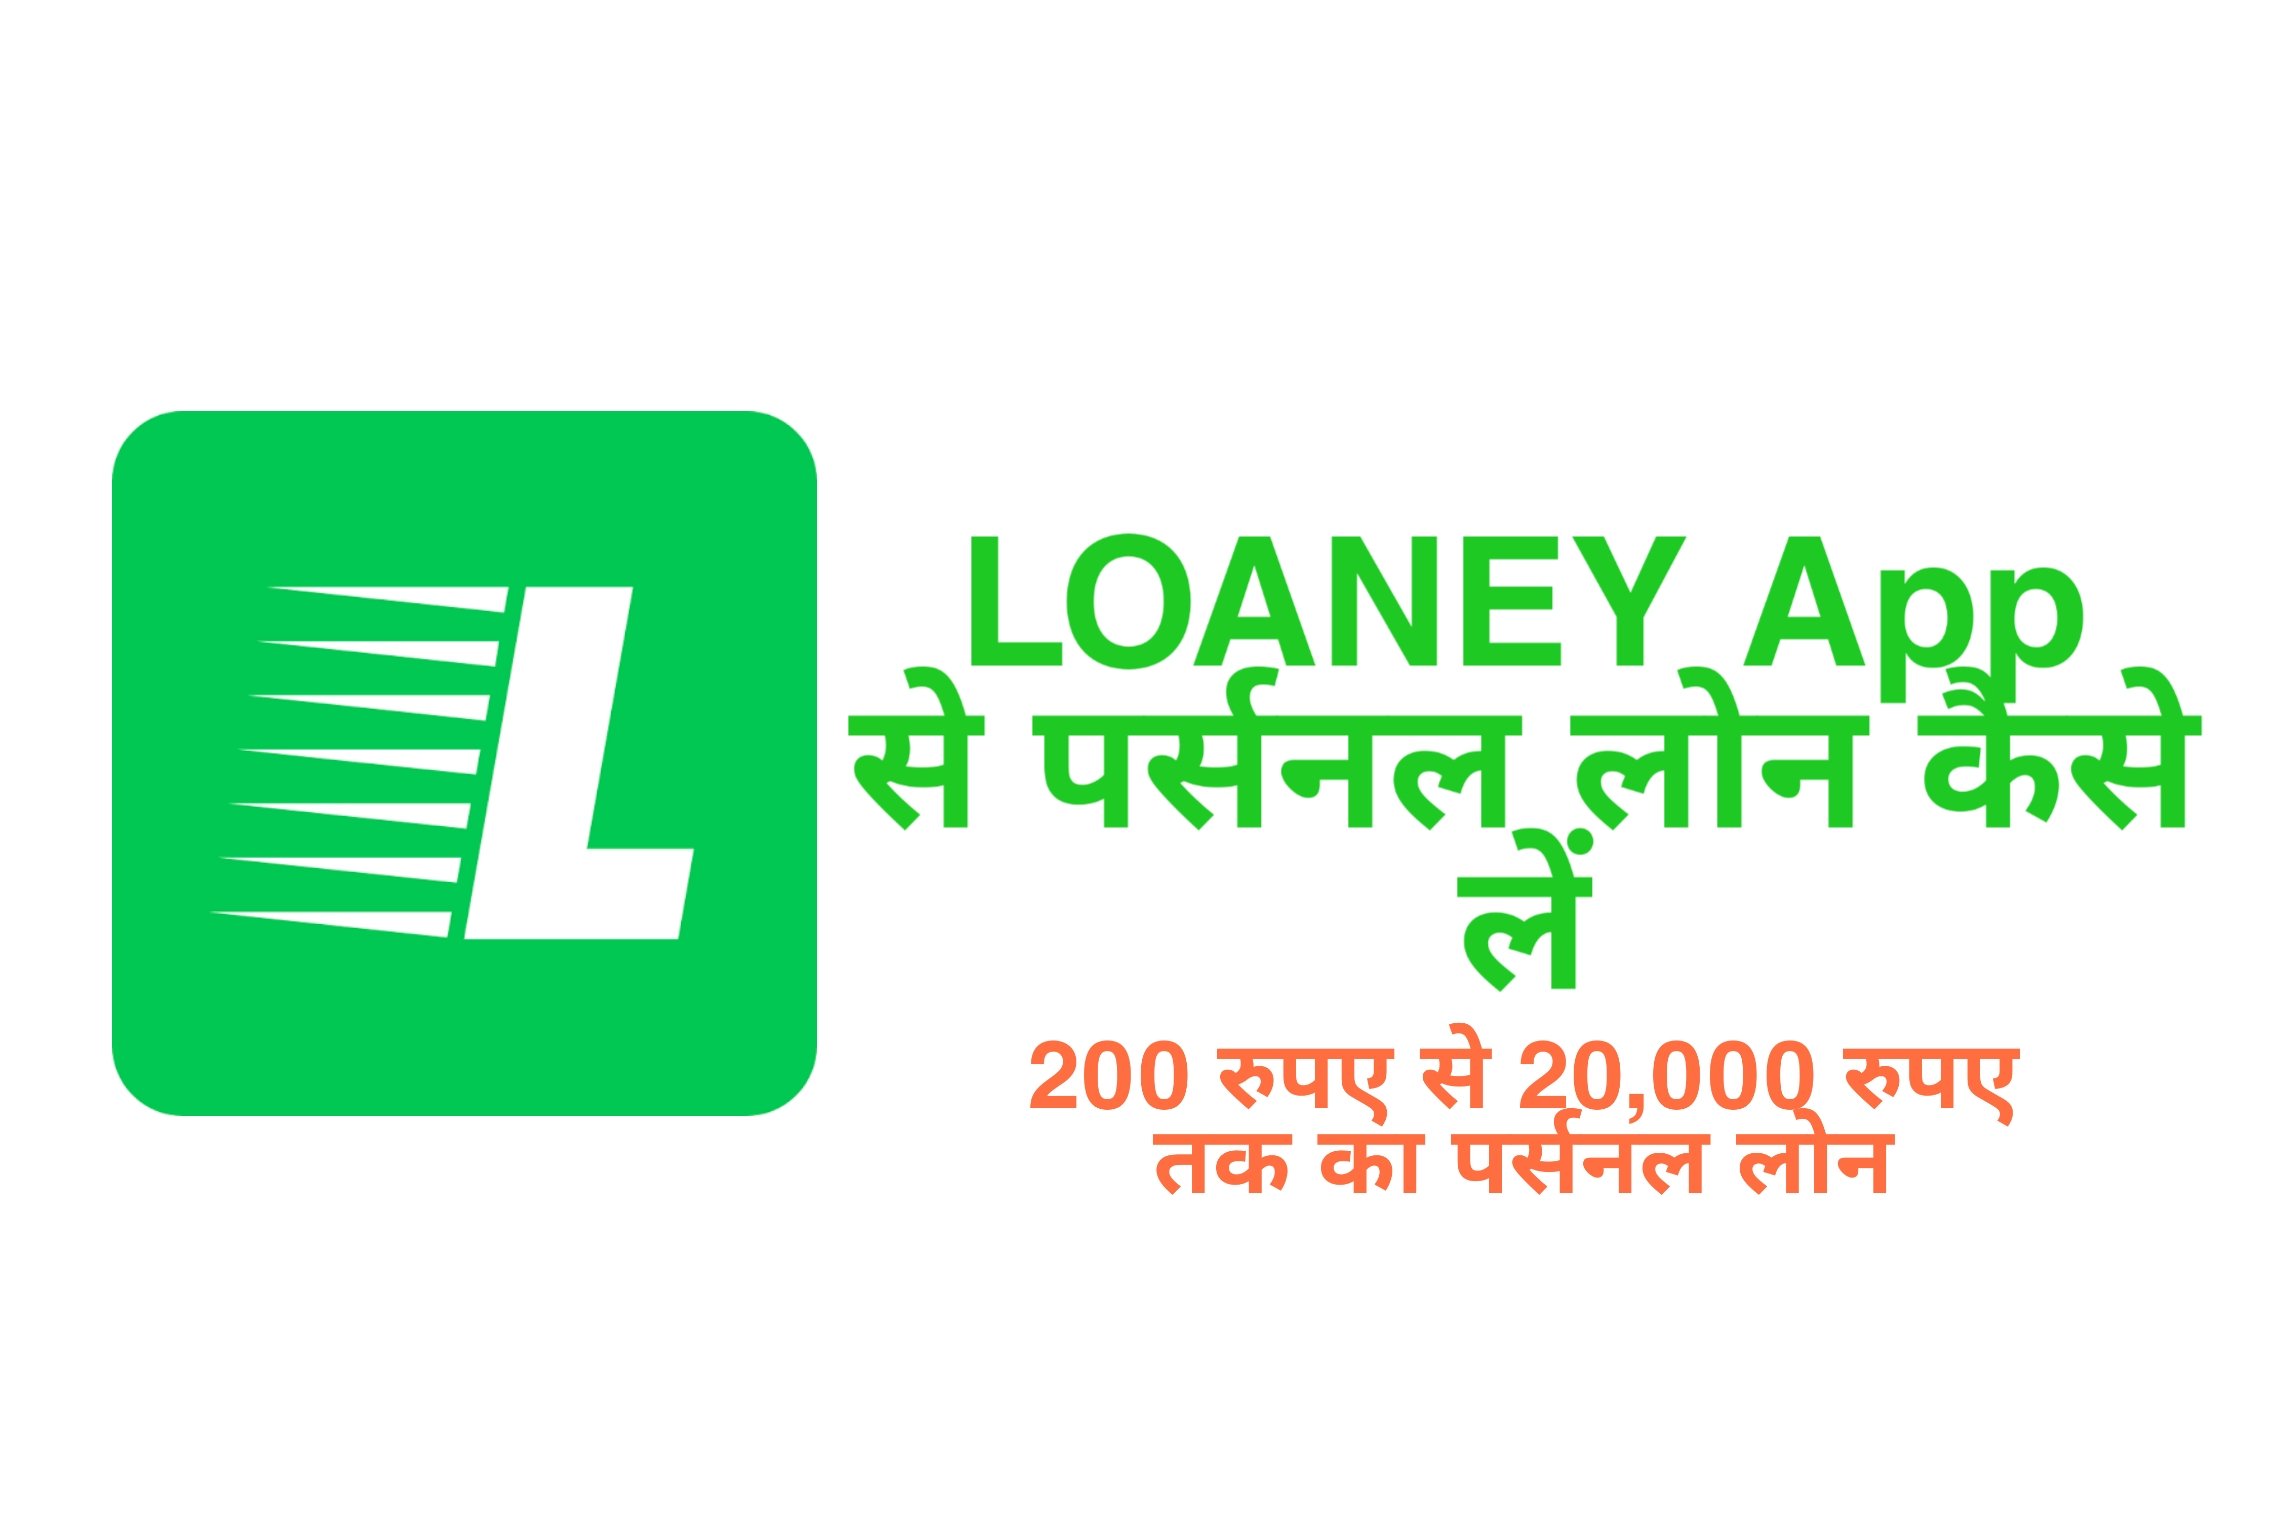 Loaney App Personal loan